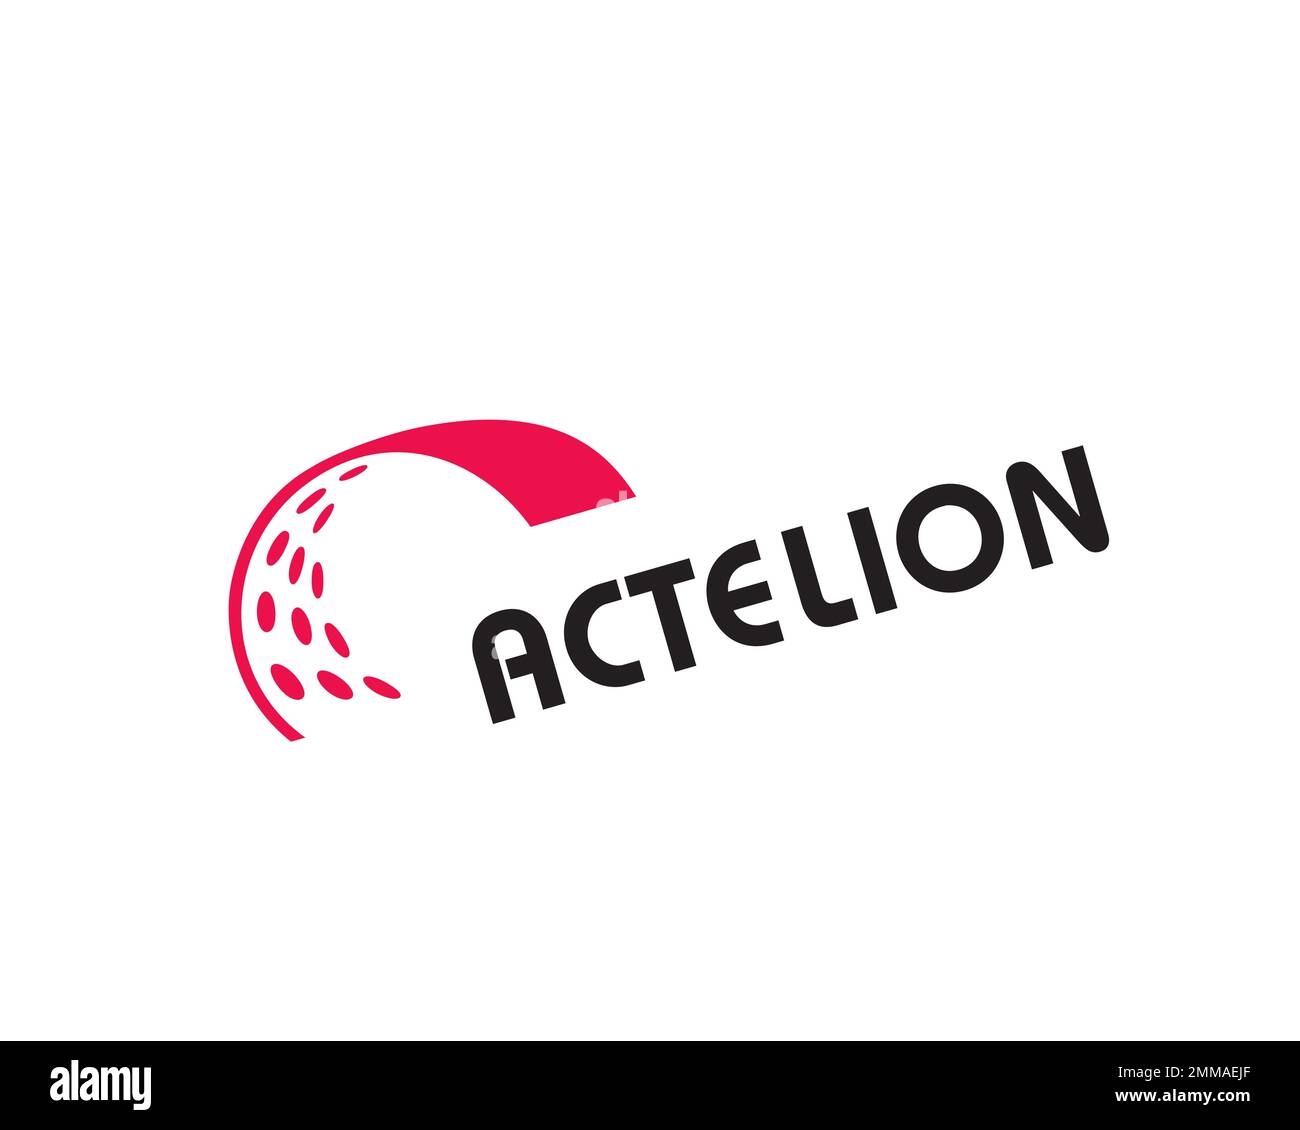 Actelion, rotated, white background, logo, brand name Stock Photo